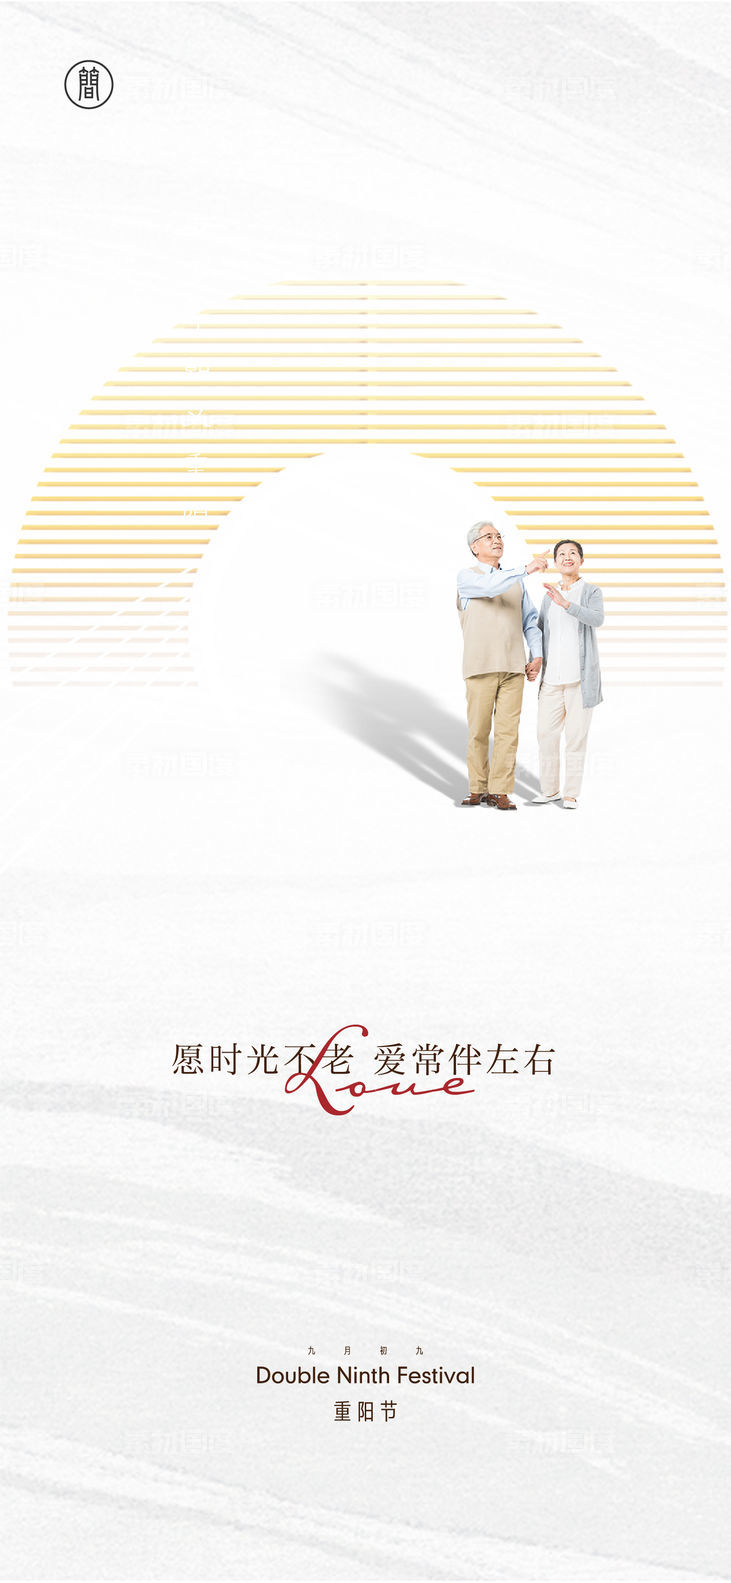 海报 中国传统节日 重阳节 九月九